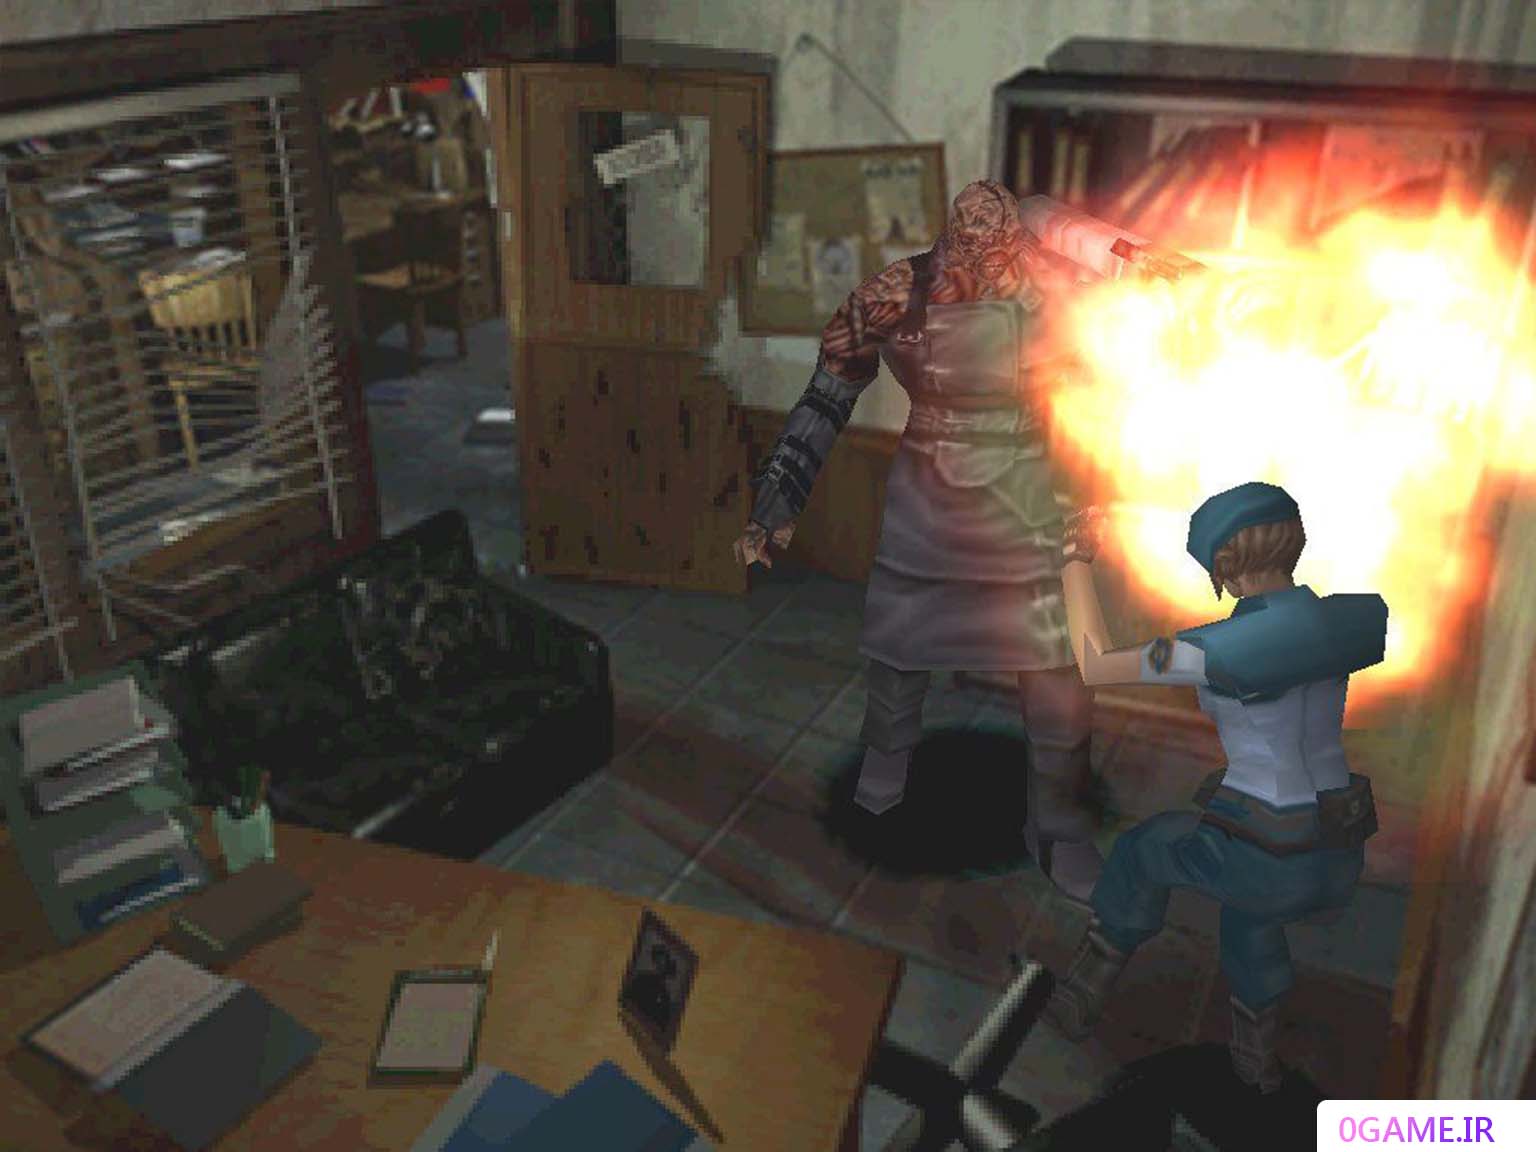 دانلود بازی رزیدنت ایول 3 : نمسیس (Resident Evil) نسخه کامل برای کامپیوتر